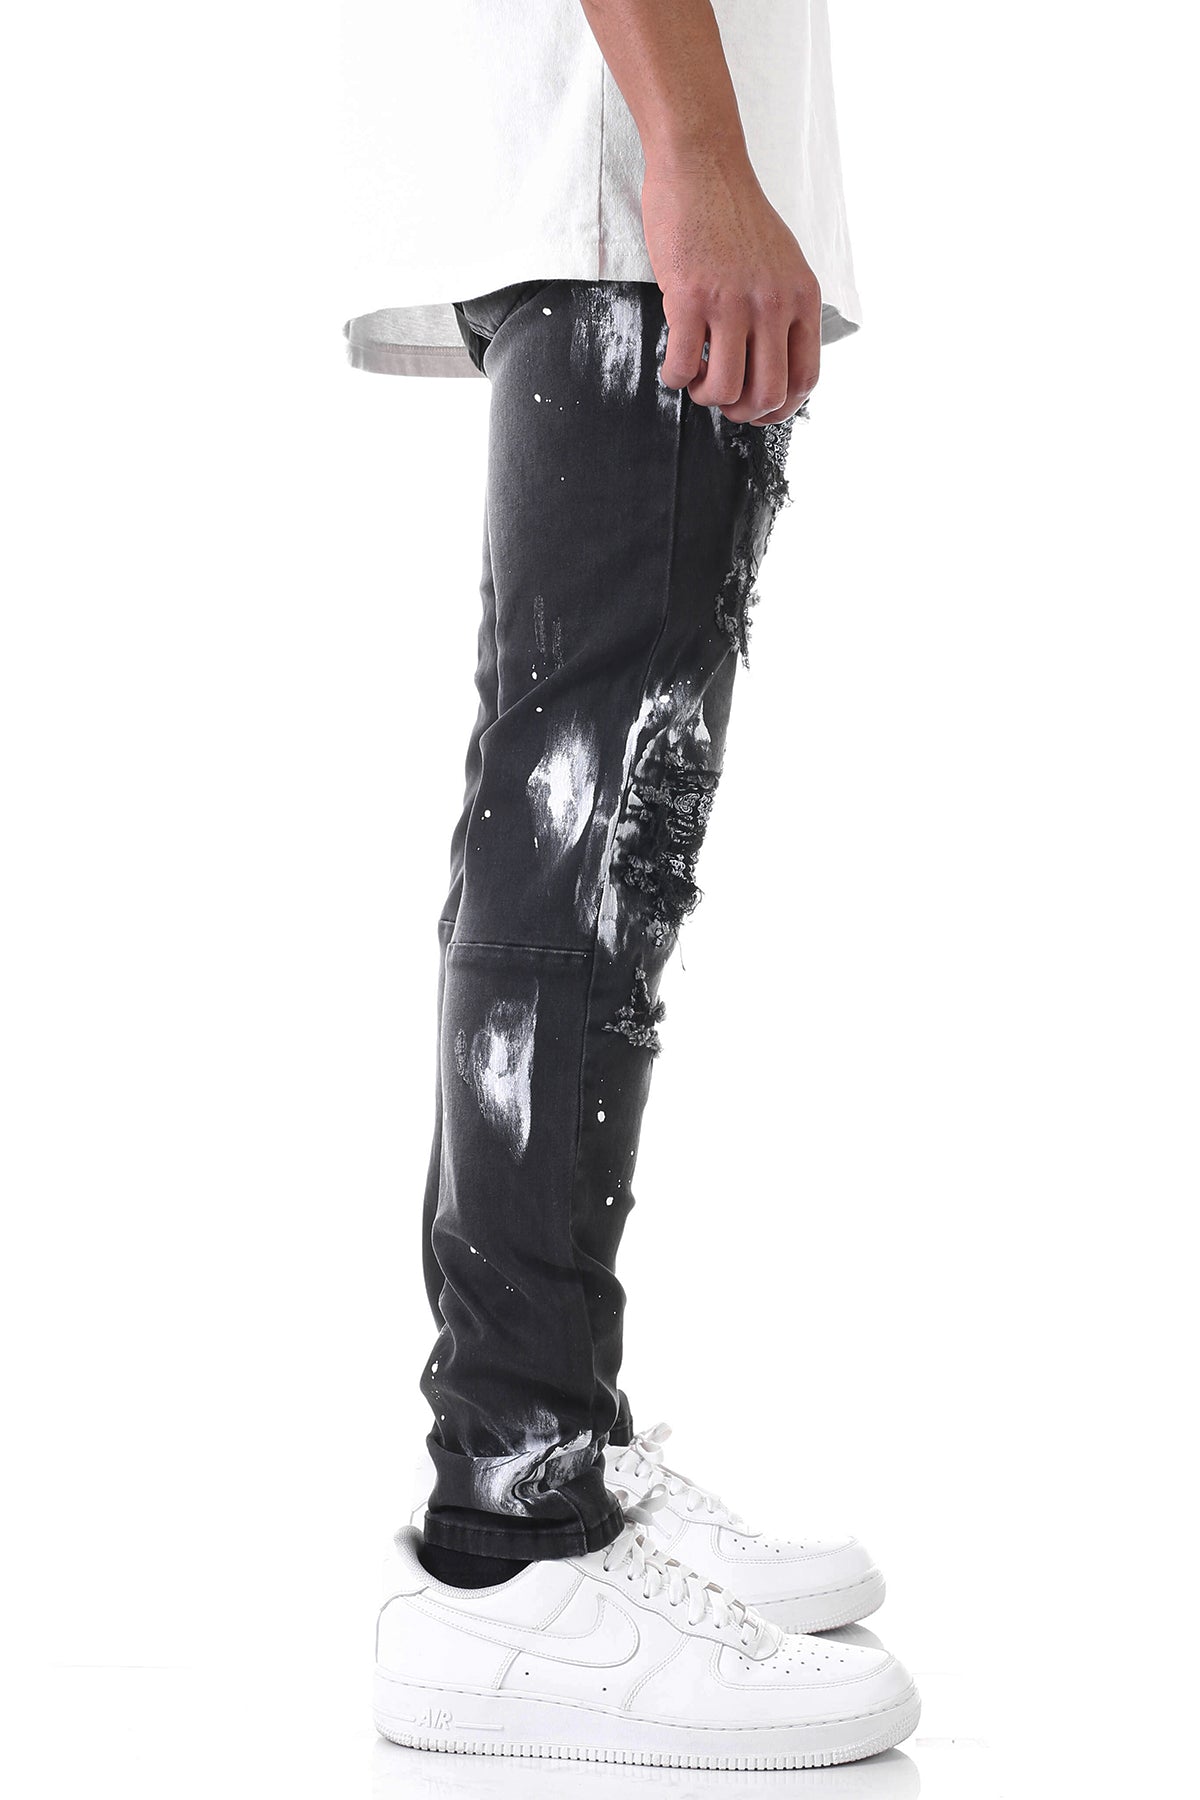 Painter's Paisley Jeans (Black) (6562300067942)